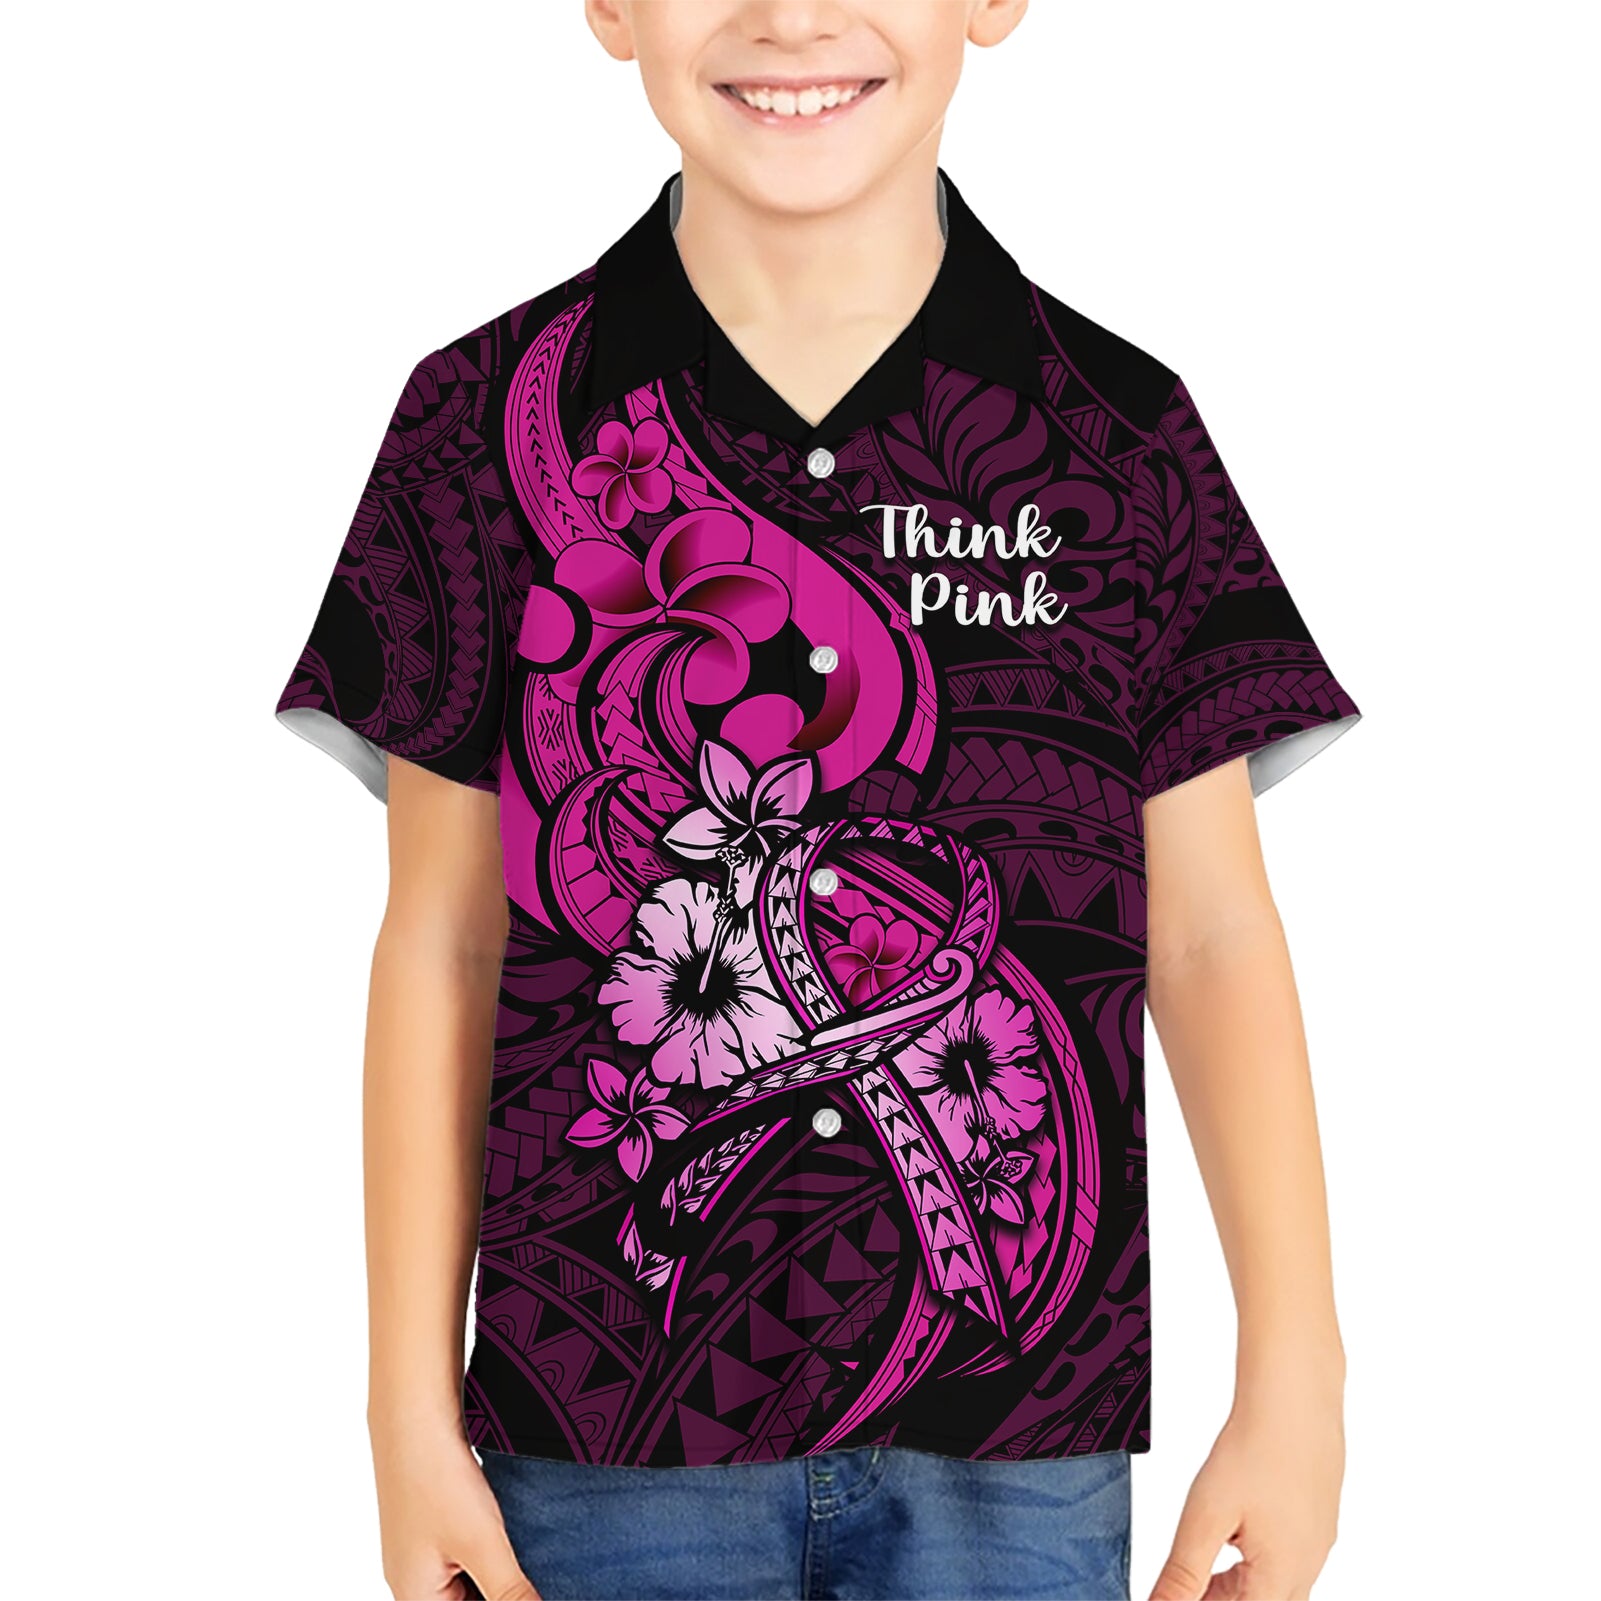 polynesia-breast-cancer-awareness-kid-hawaiian-shirt-think-pink-polynesian-ribbon-black-version